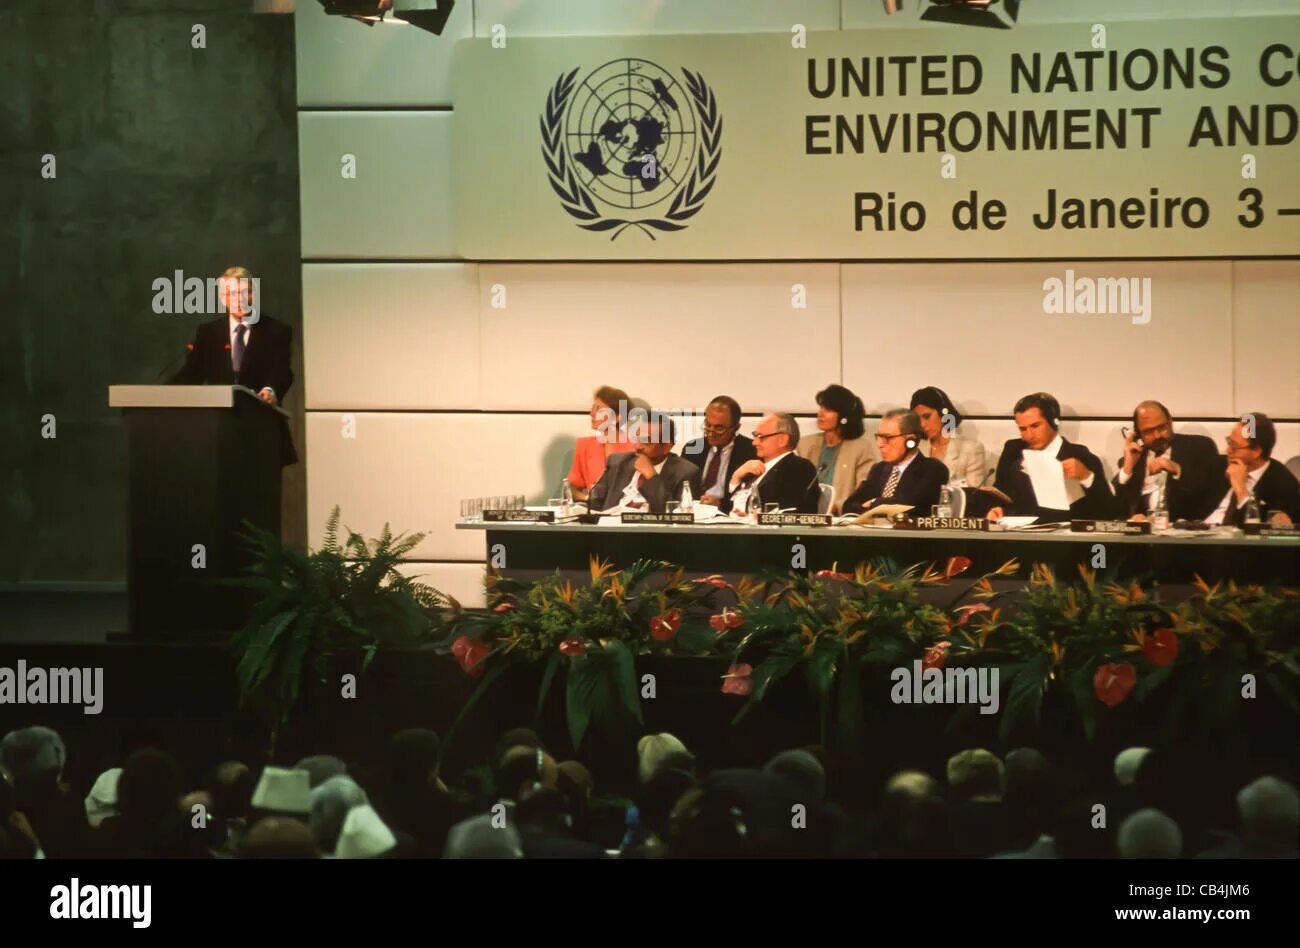 Конференция ООН В Рио де Жанейро 1992. Саммит в Рио де Жанейро 1992. Конференция ООН по окружающей среде и развитию в Рио-де-Жанейро. Конференции ООН по окружающей среде в Рио-де-Жанейро (1992 г.)».